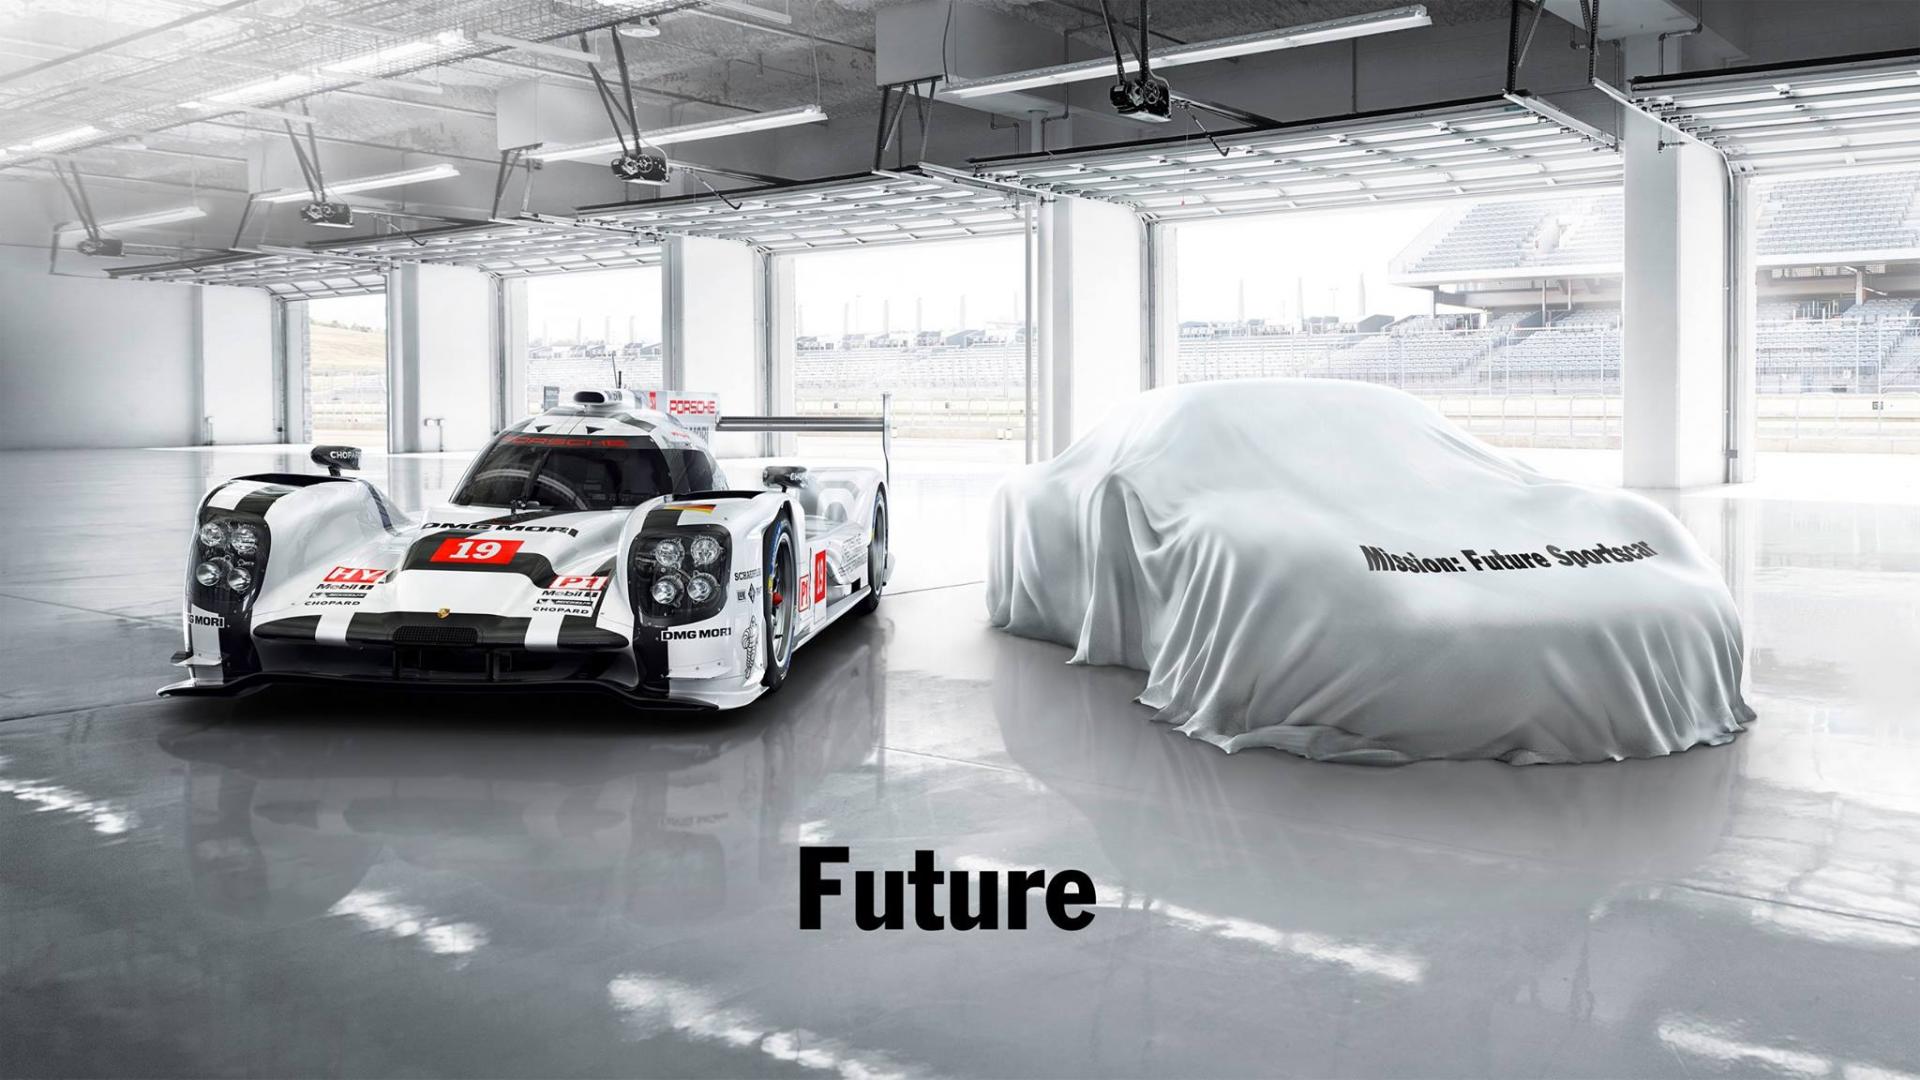 Porsche 919 hybrid - Porsche sportscar - Future